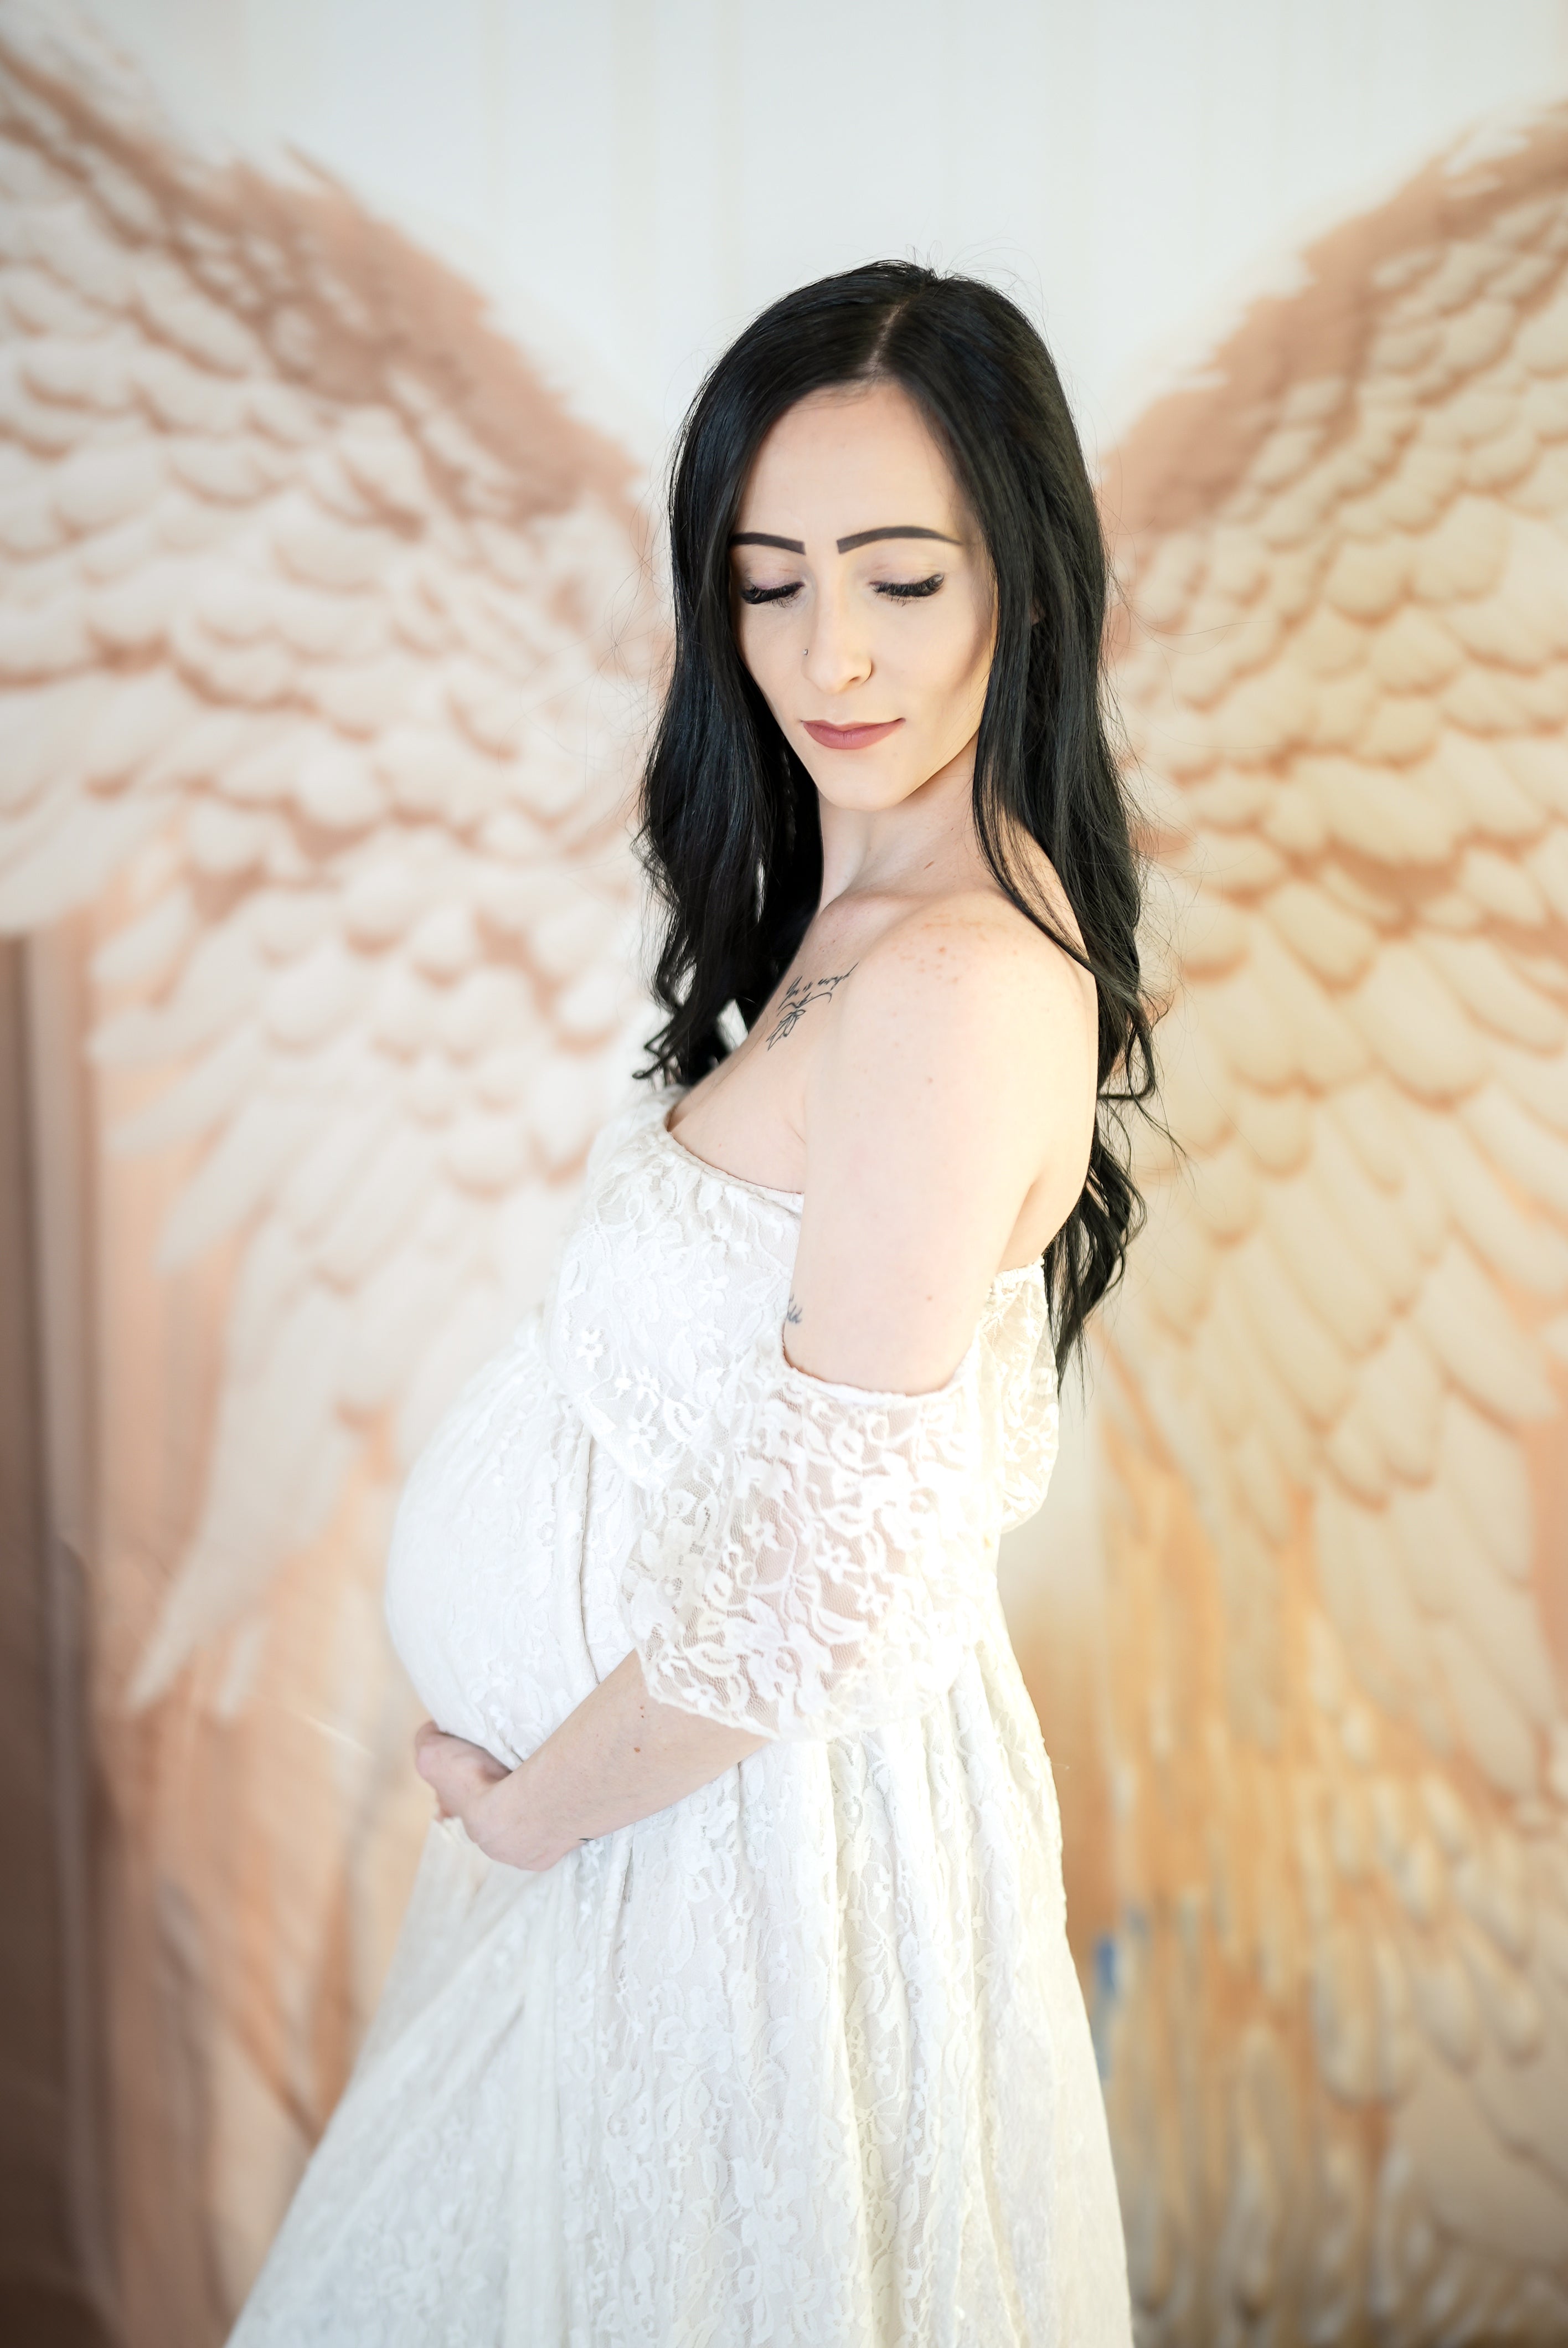 Kate Blanc Aile d'ange Rideaux Toile de fond conçue par Chain Photographie